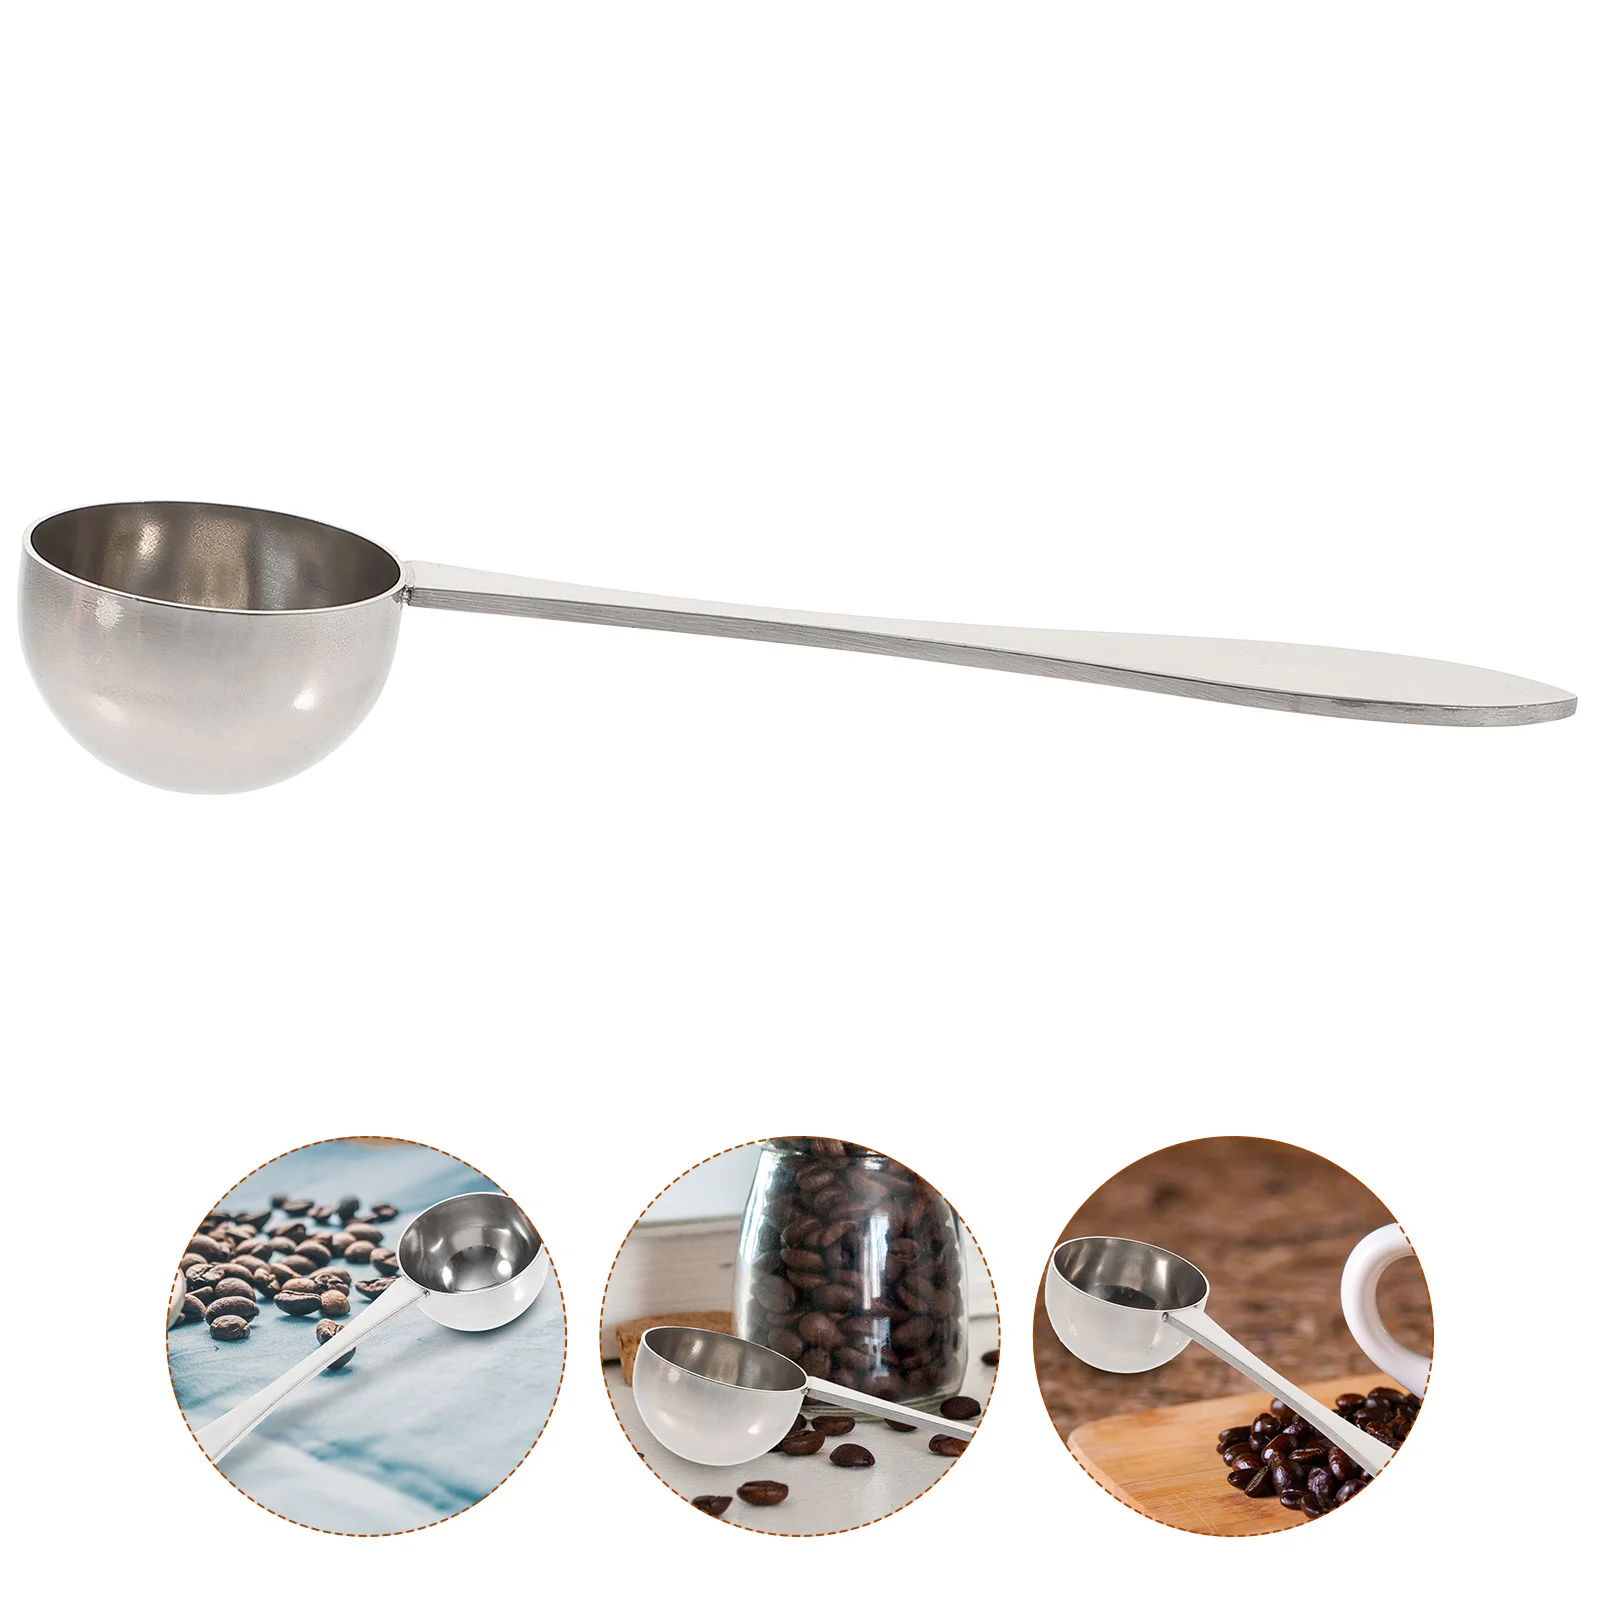 

Measuring Spoon Spoons Scoop Coffee Mini Metal Powderkitchen Teaspoons Salt Measure Steel Stainless Cup Serving Sealing Sugar